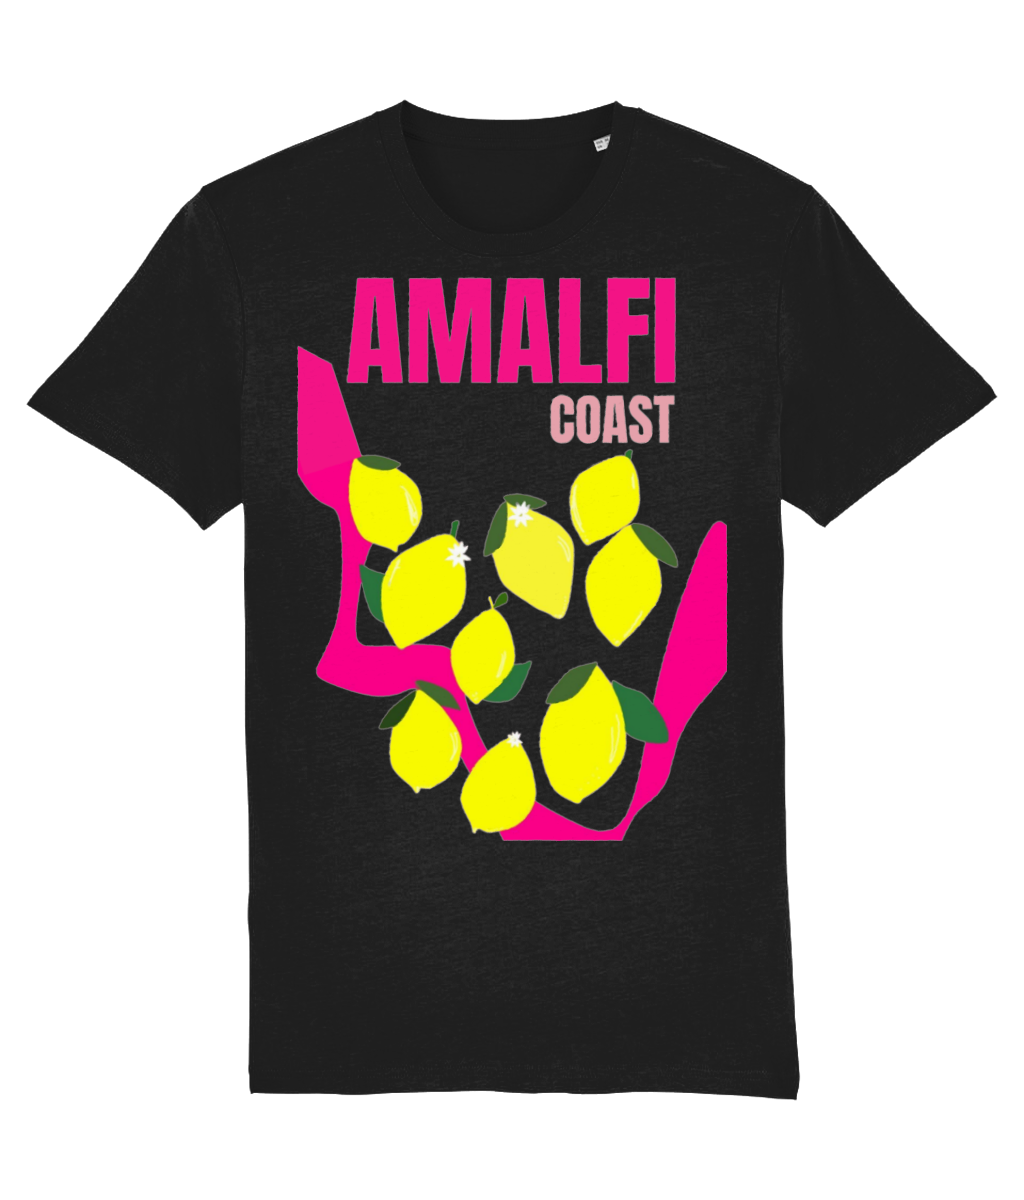 AMALFI COAST SHIRT